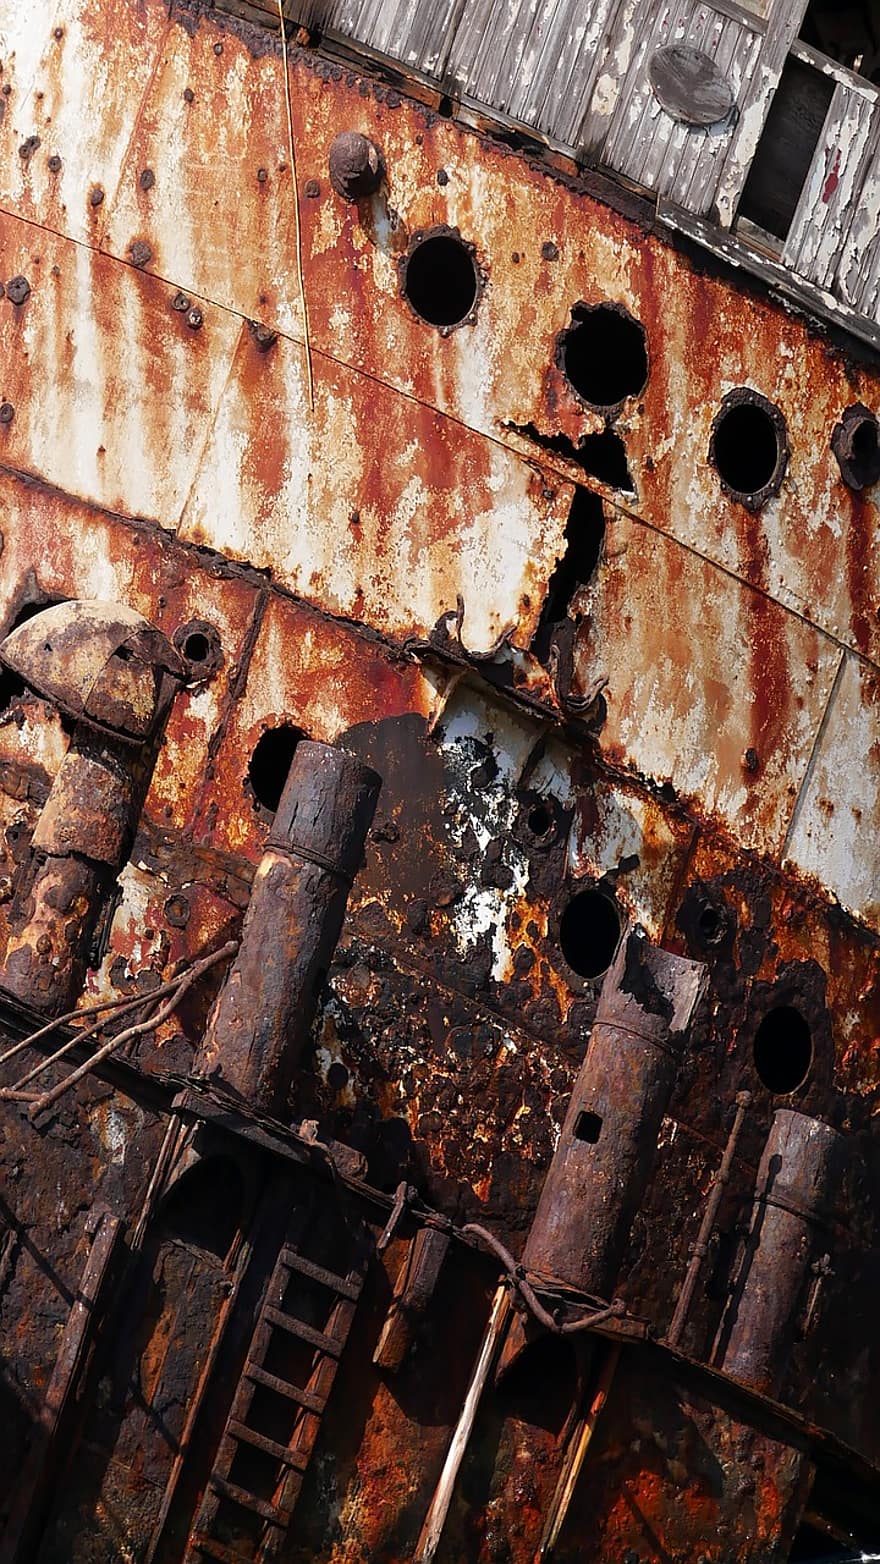 destruir, barco, mar, Grécia, ferrugem, metal, oxidado, velho, abandonado, sujo, indústria